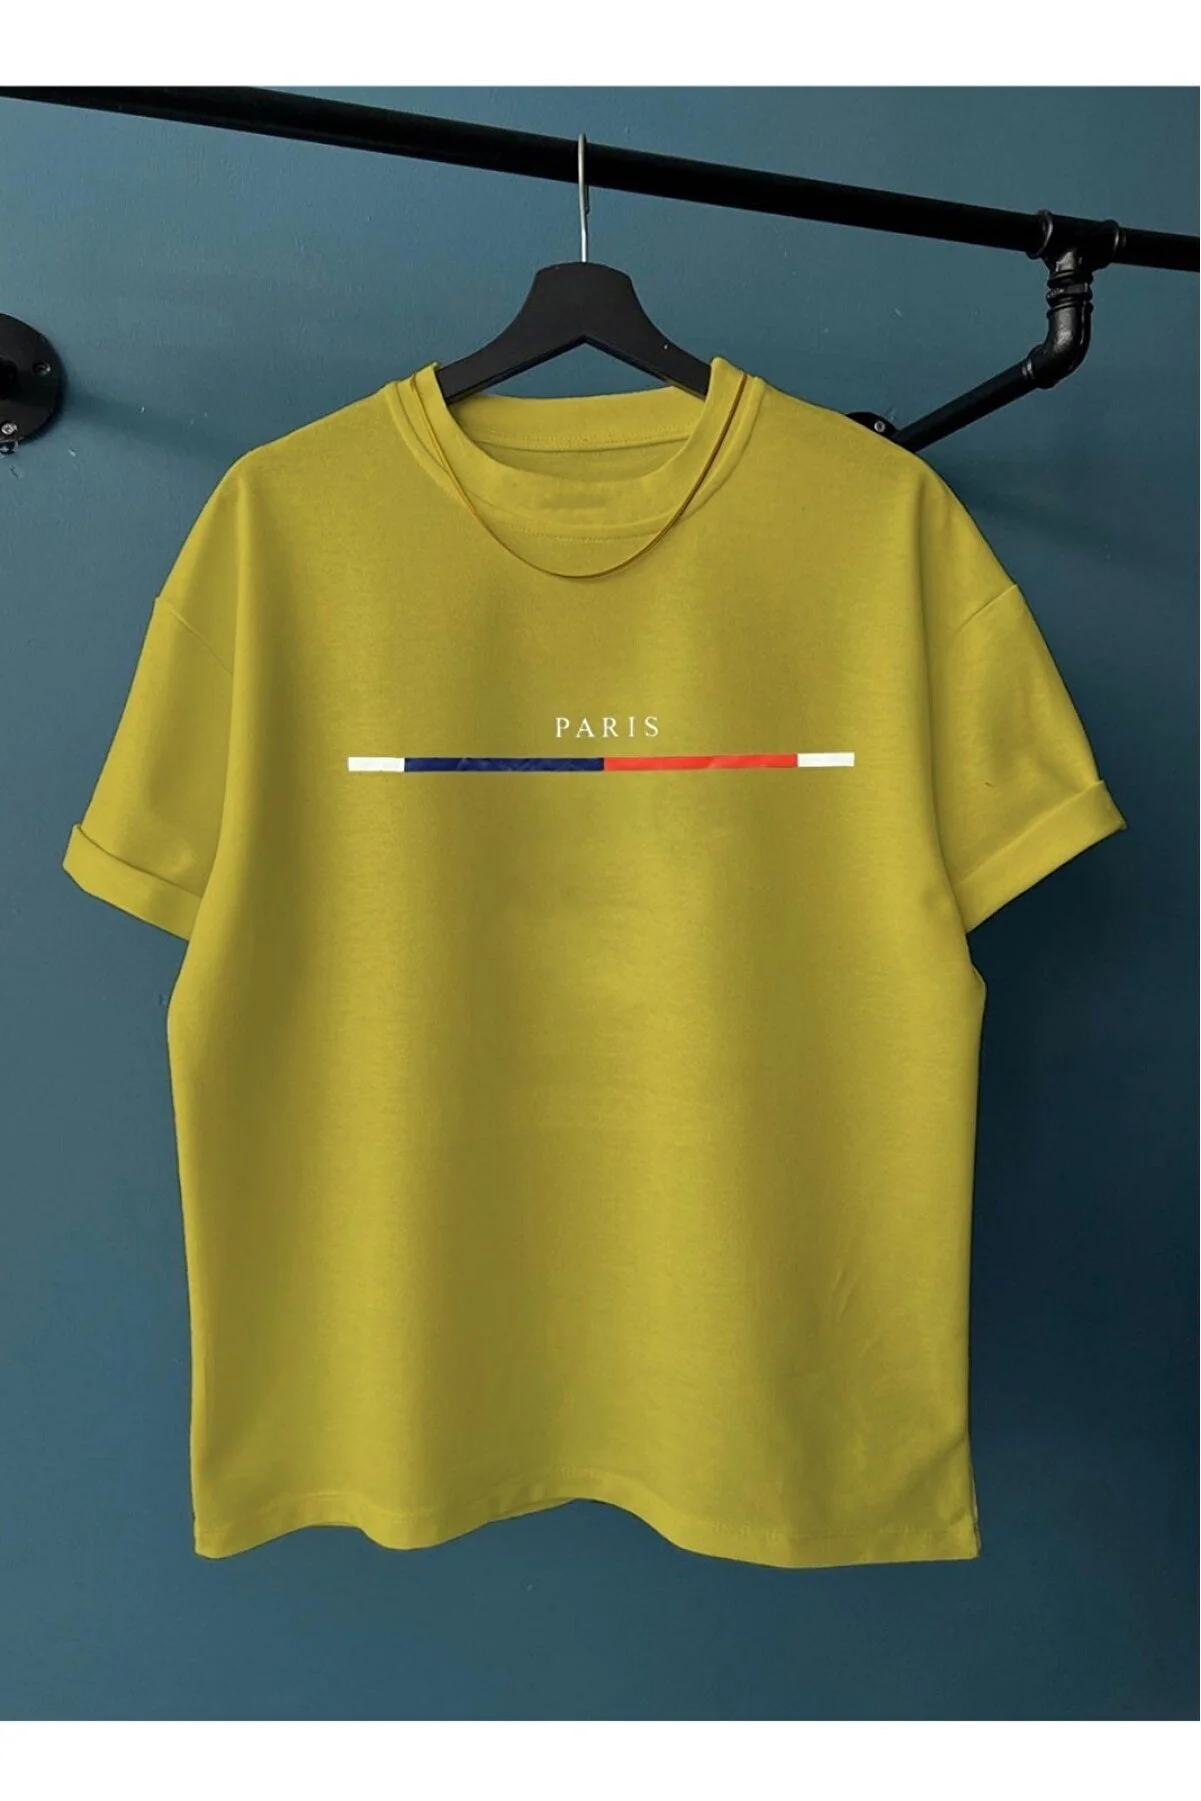 Black Street Herren-T-Shirt mit grauem Bruststreifen, schmalem Streifen und Paris-Aufdruck, Oversize-Rundhalsausschnitt